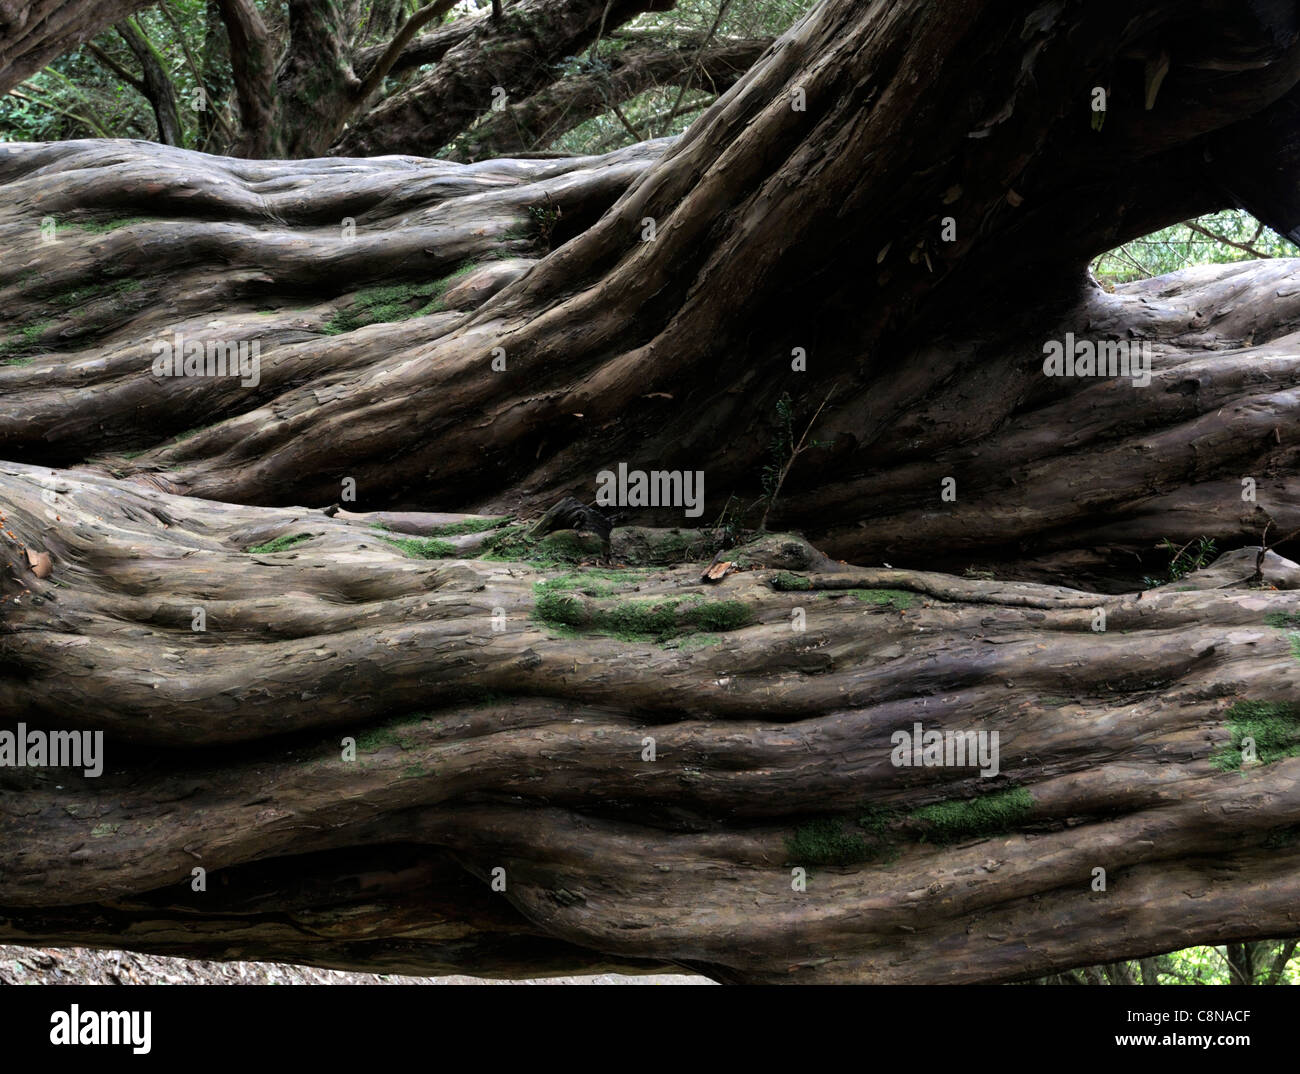 Antica taxus baccata Yew Tree vecchio ritorto piegati deformati tronco corteccia liscia rami sempreverdi trunk ombra ombra Foto Stock